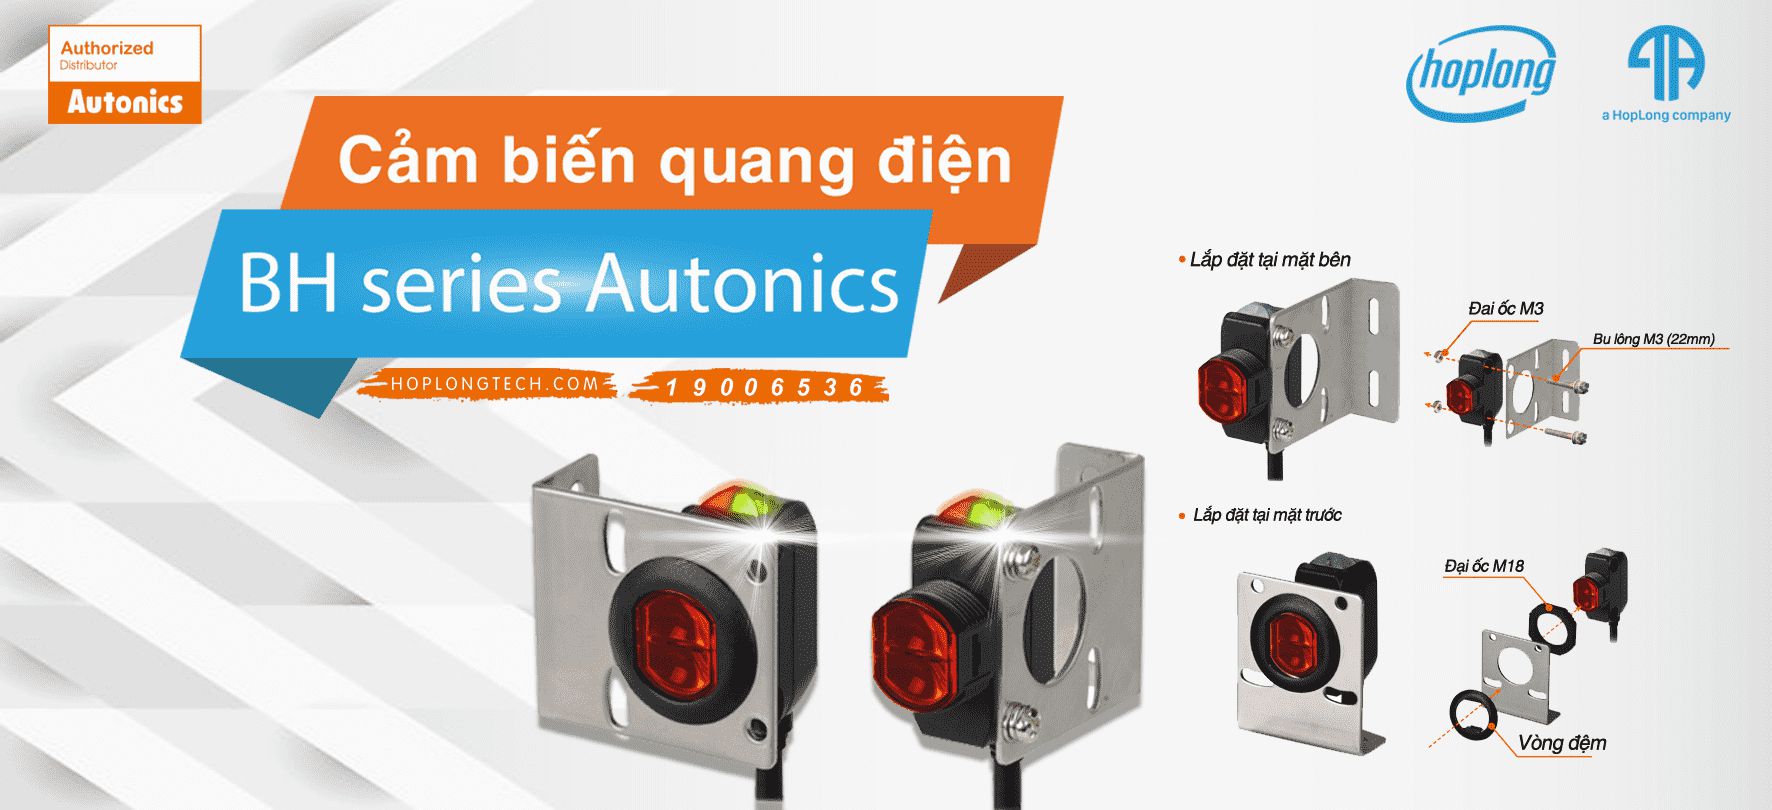 [Giới thiệu] Cảm biến quang điện BH series Autonics